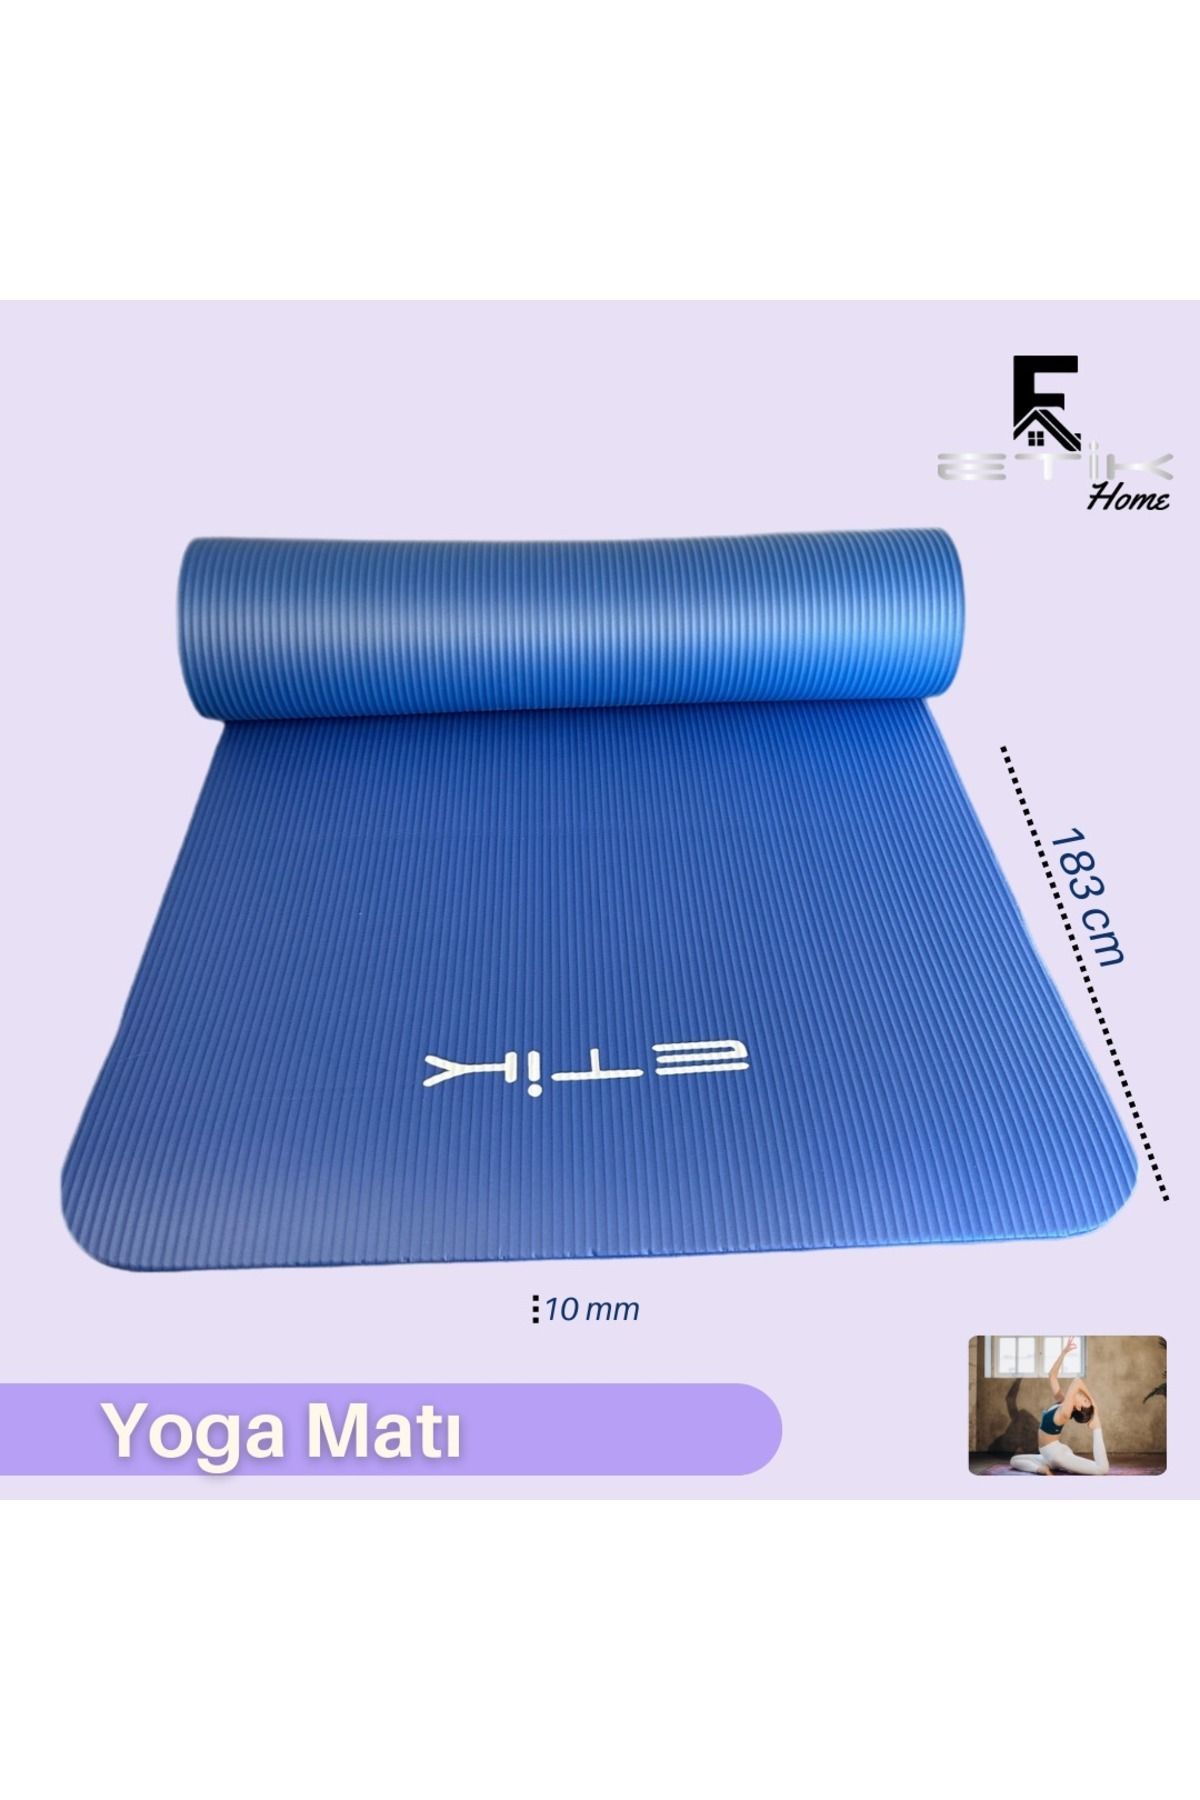 Genel Markalar Lacivert Yoga Matı 10 mm Taşıma Askılı Yoga Minderi ETK200000 var Yoga 183 x 61 cm 10 mm Tek Ebat